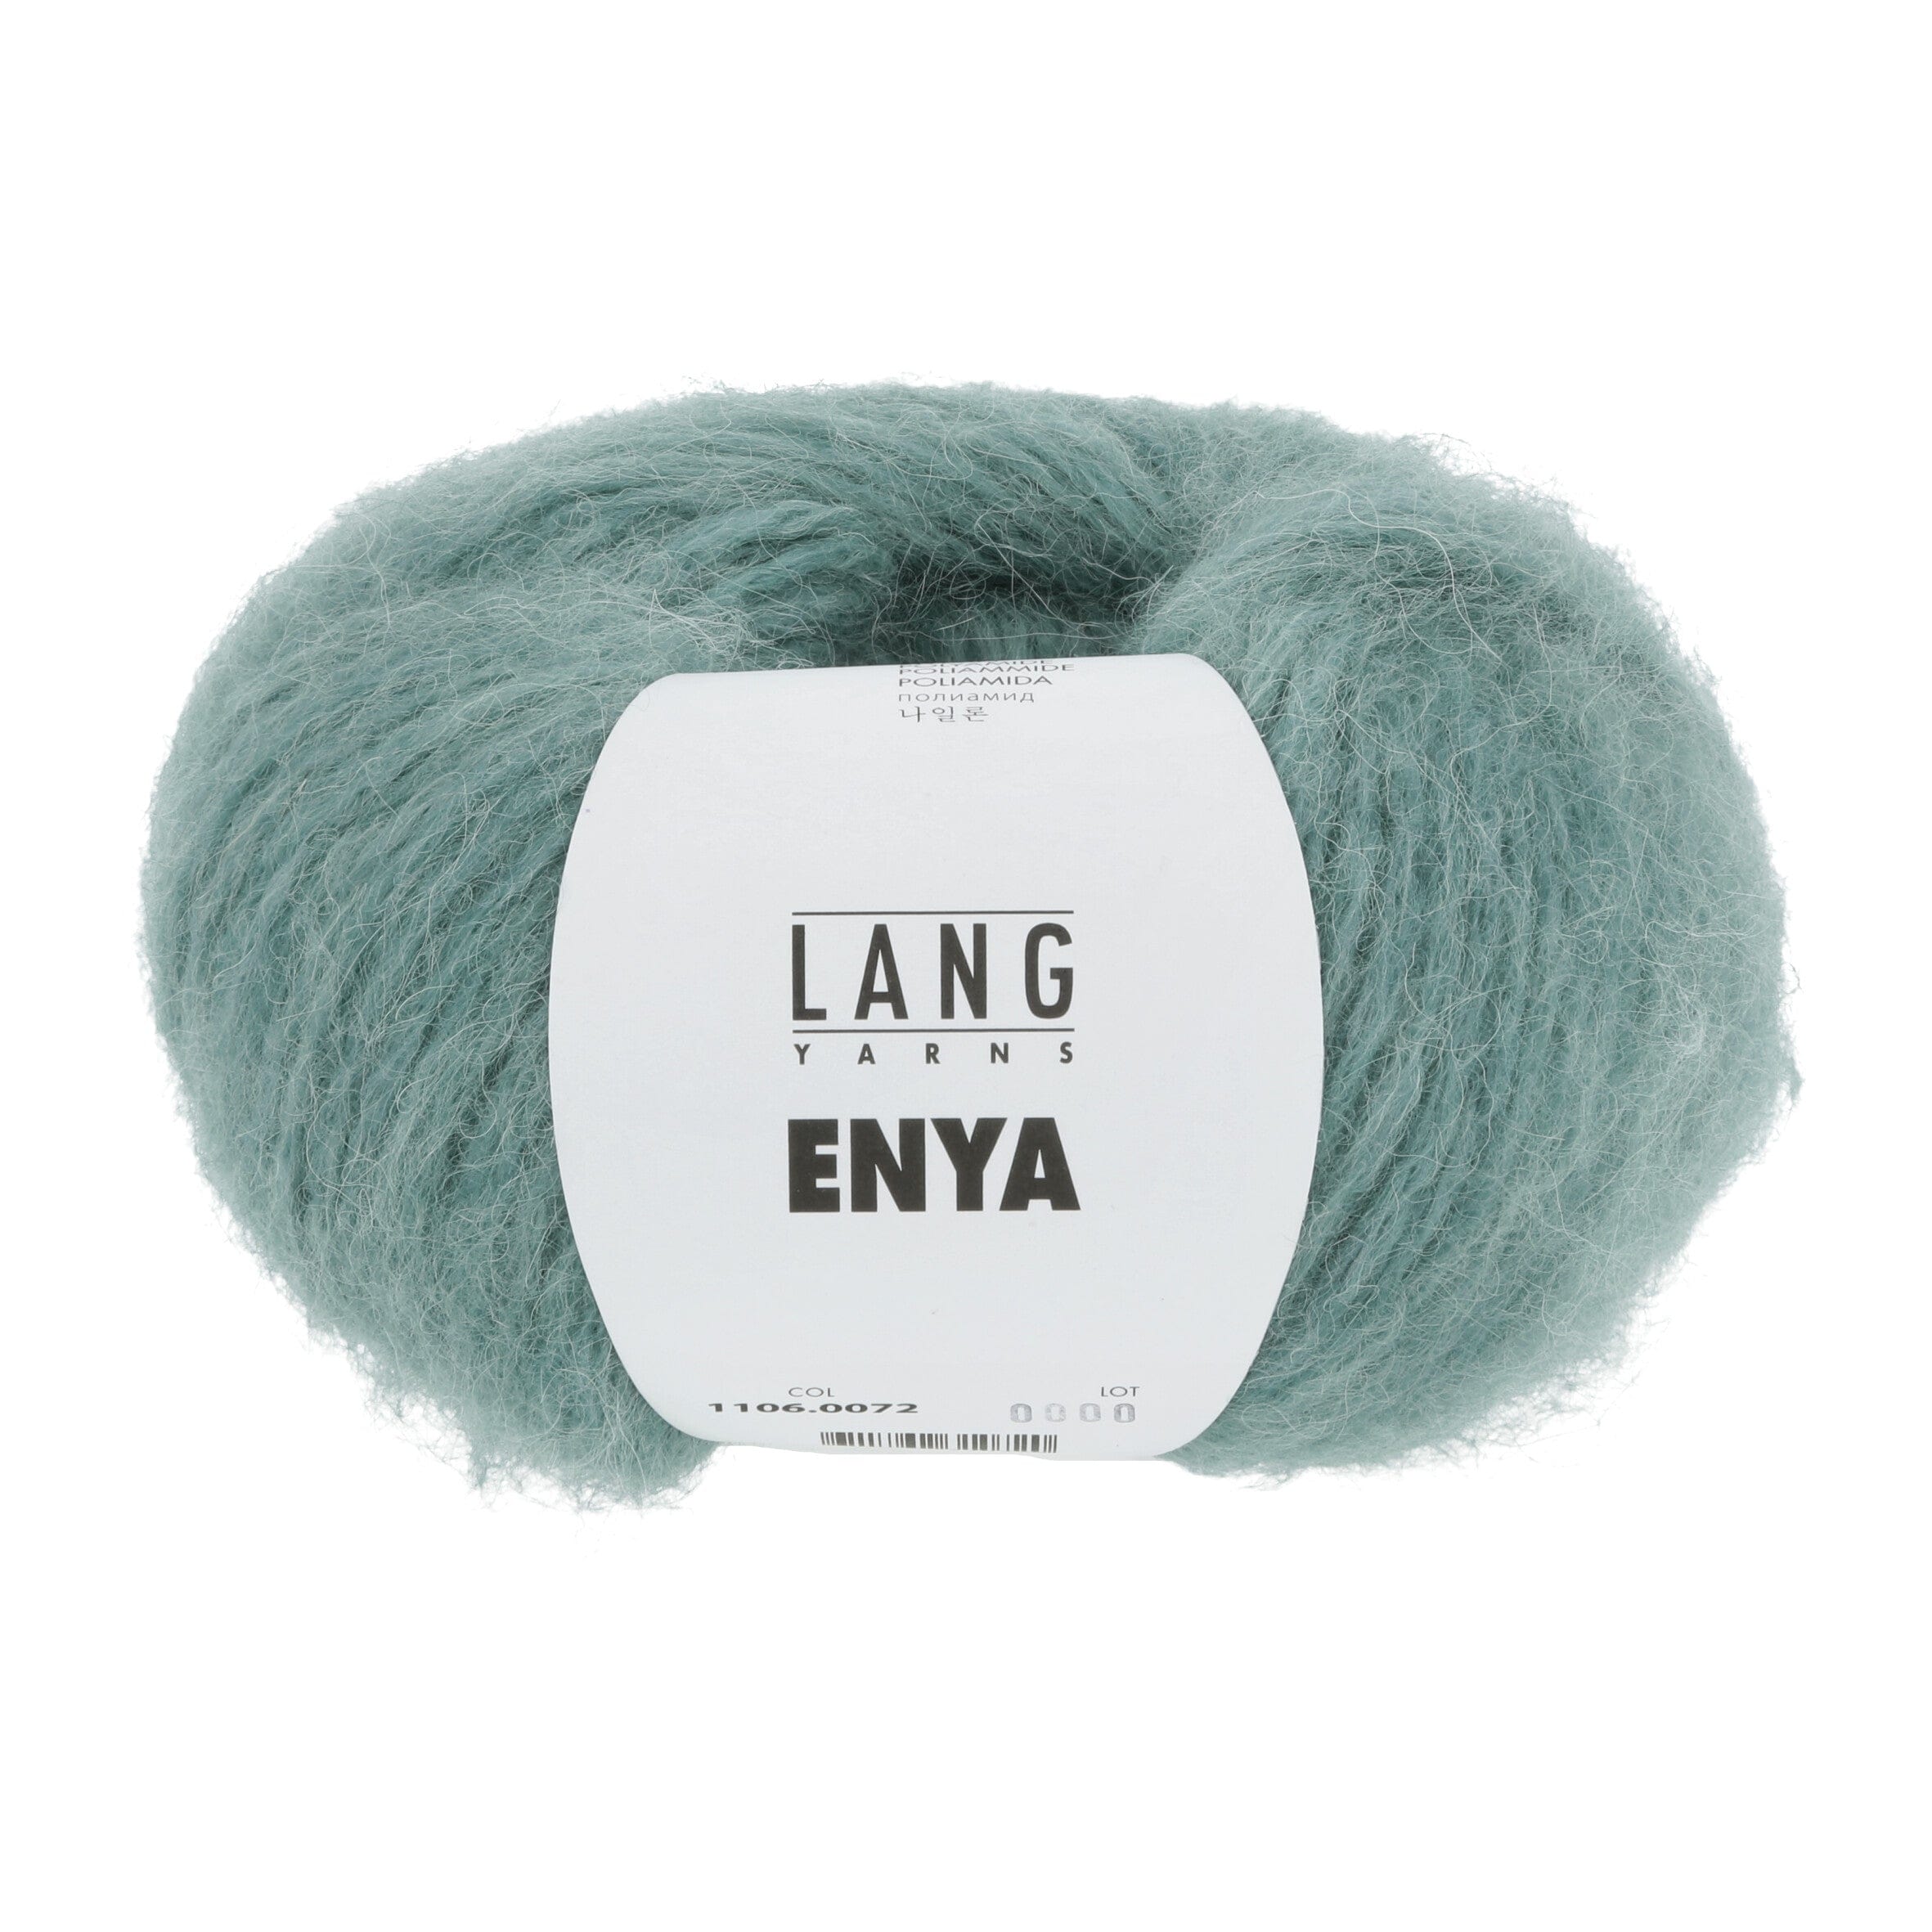 ENYA von LANG YARNS jetzt online kaufen bei OONIQUE